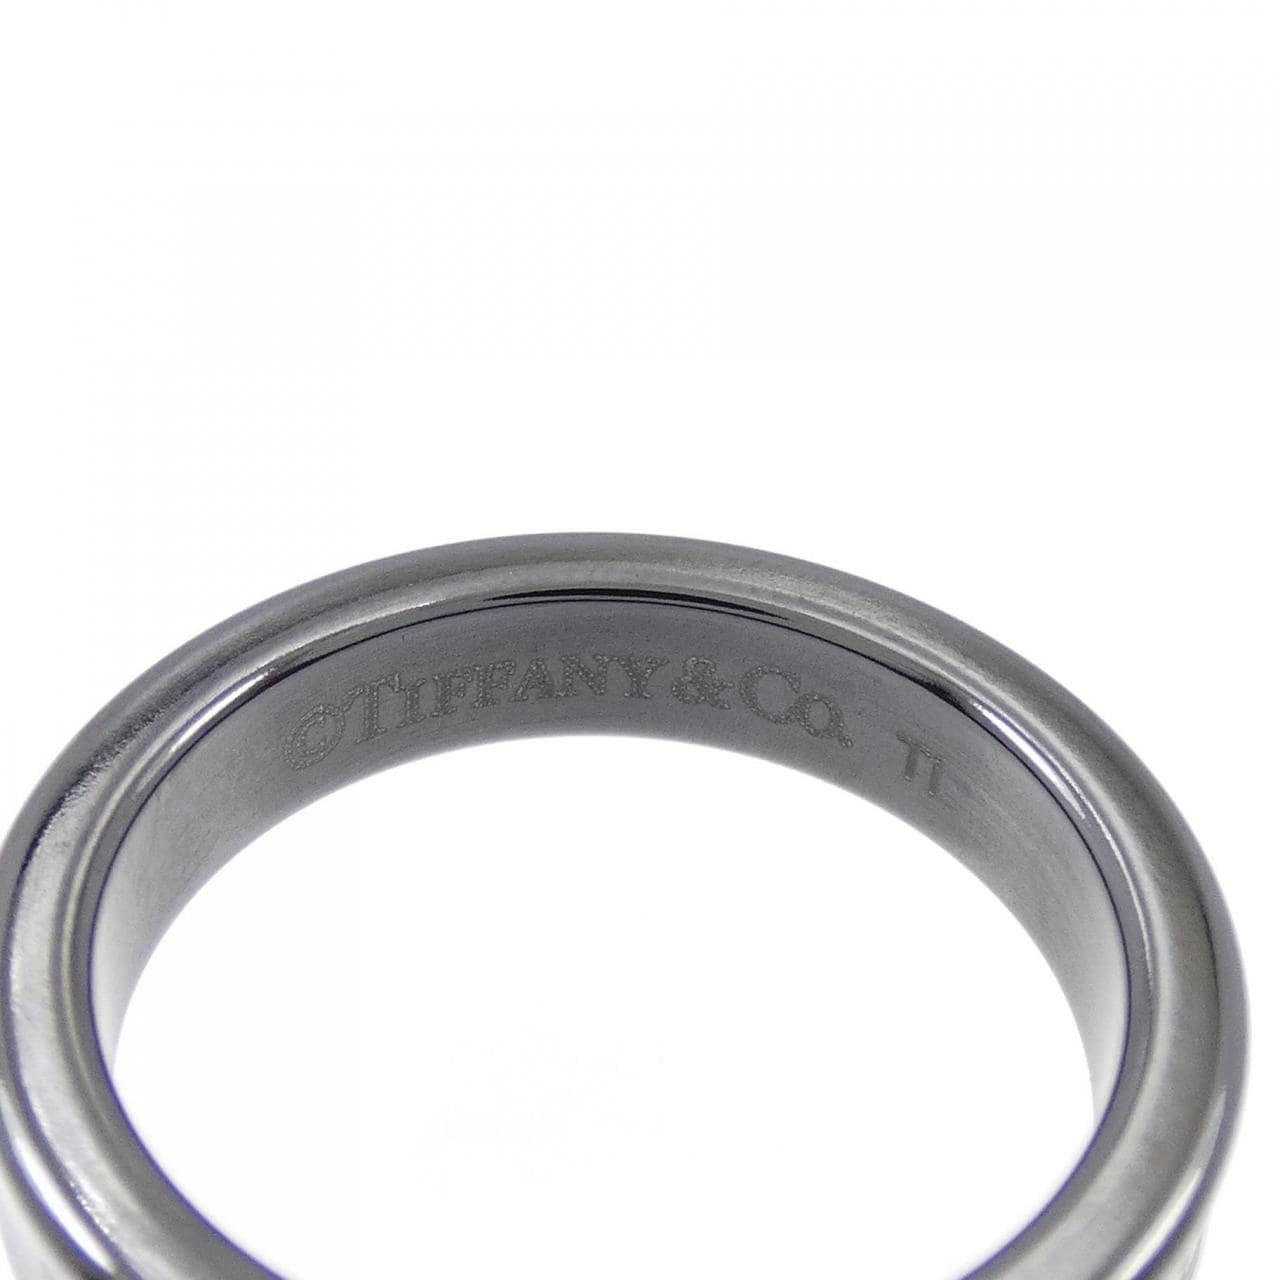 TIFFANY 1837 narrow ring